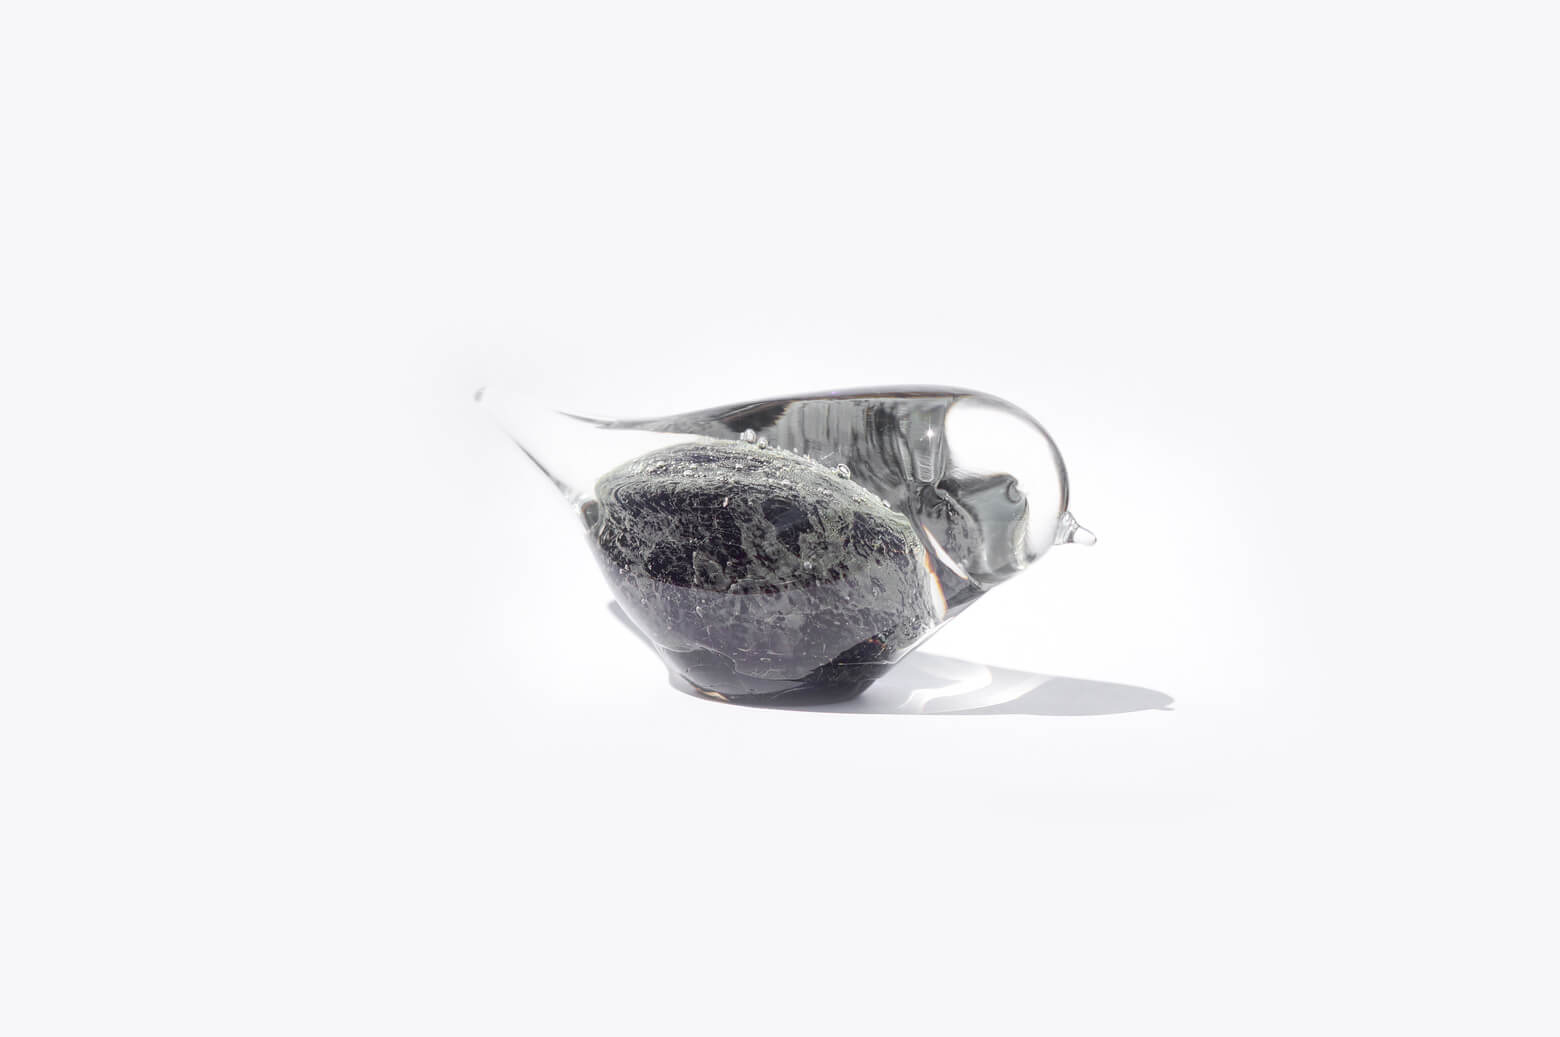 Randsfjord Glass Bird Object designed by Benny Motzfeldt/ランズフィオルド グラスベルグ ガラス 鳥のオブジェ ベンニー・モルツフェルト ノルウェー 北欧雑貨 ブラック